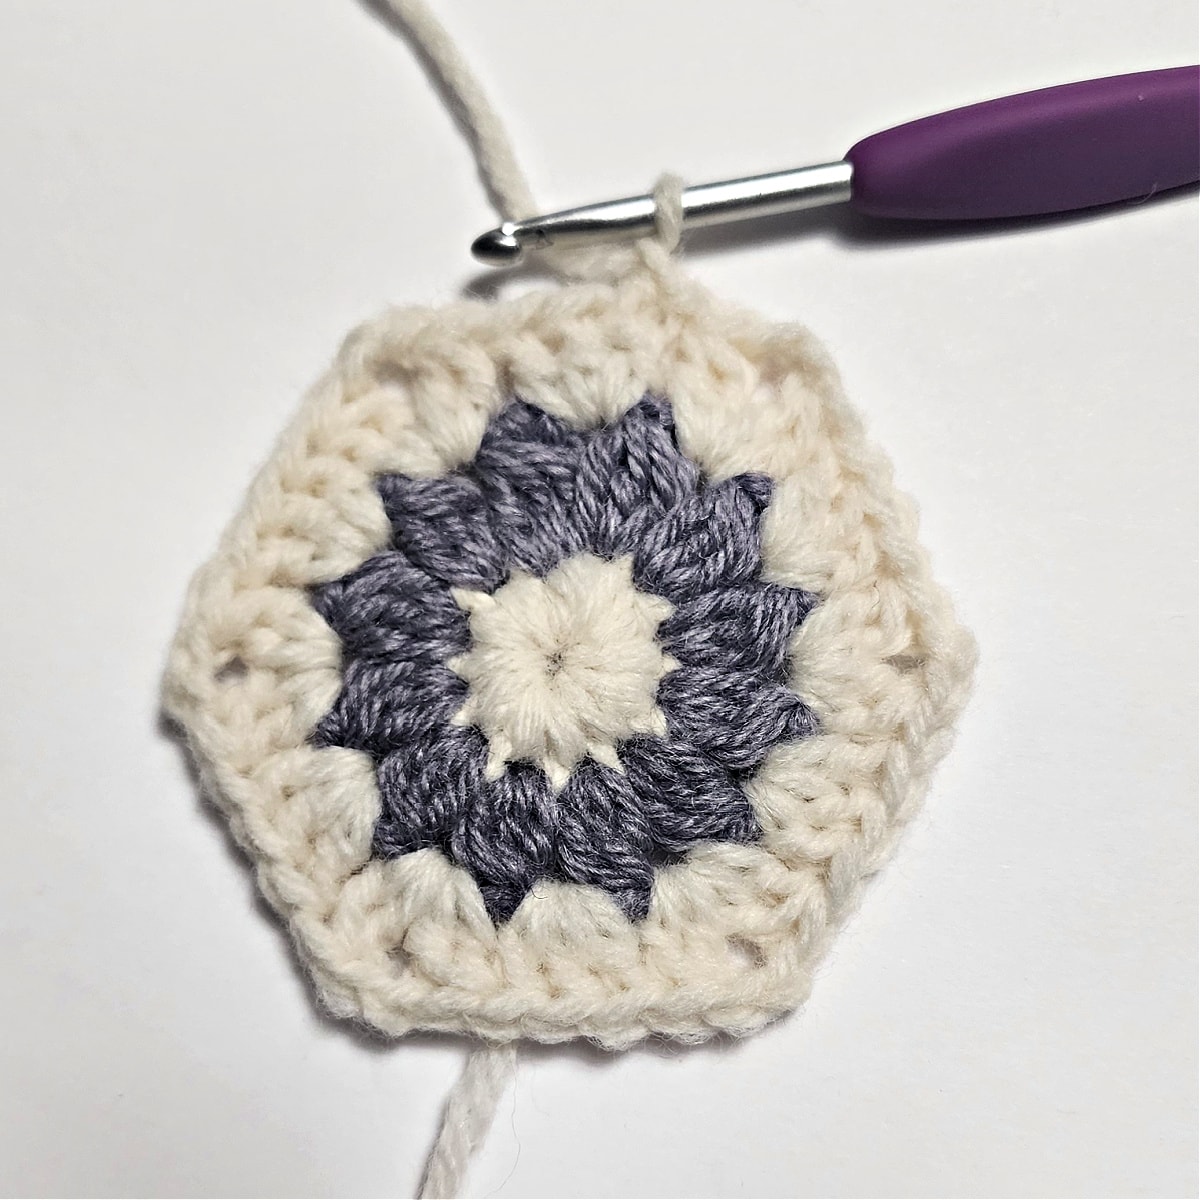 Small crochet hexagon granny square.